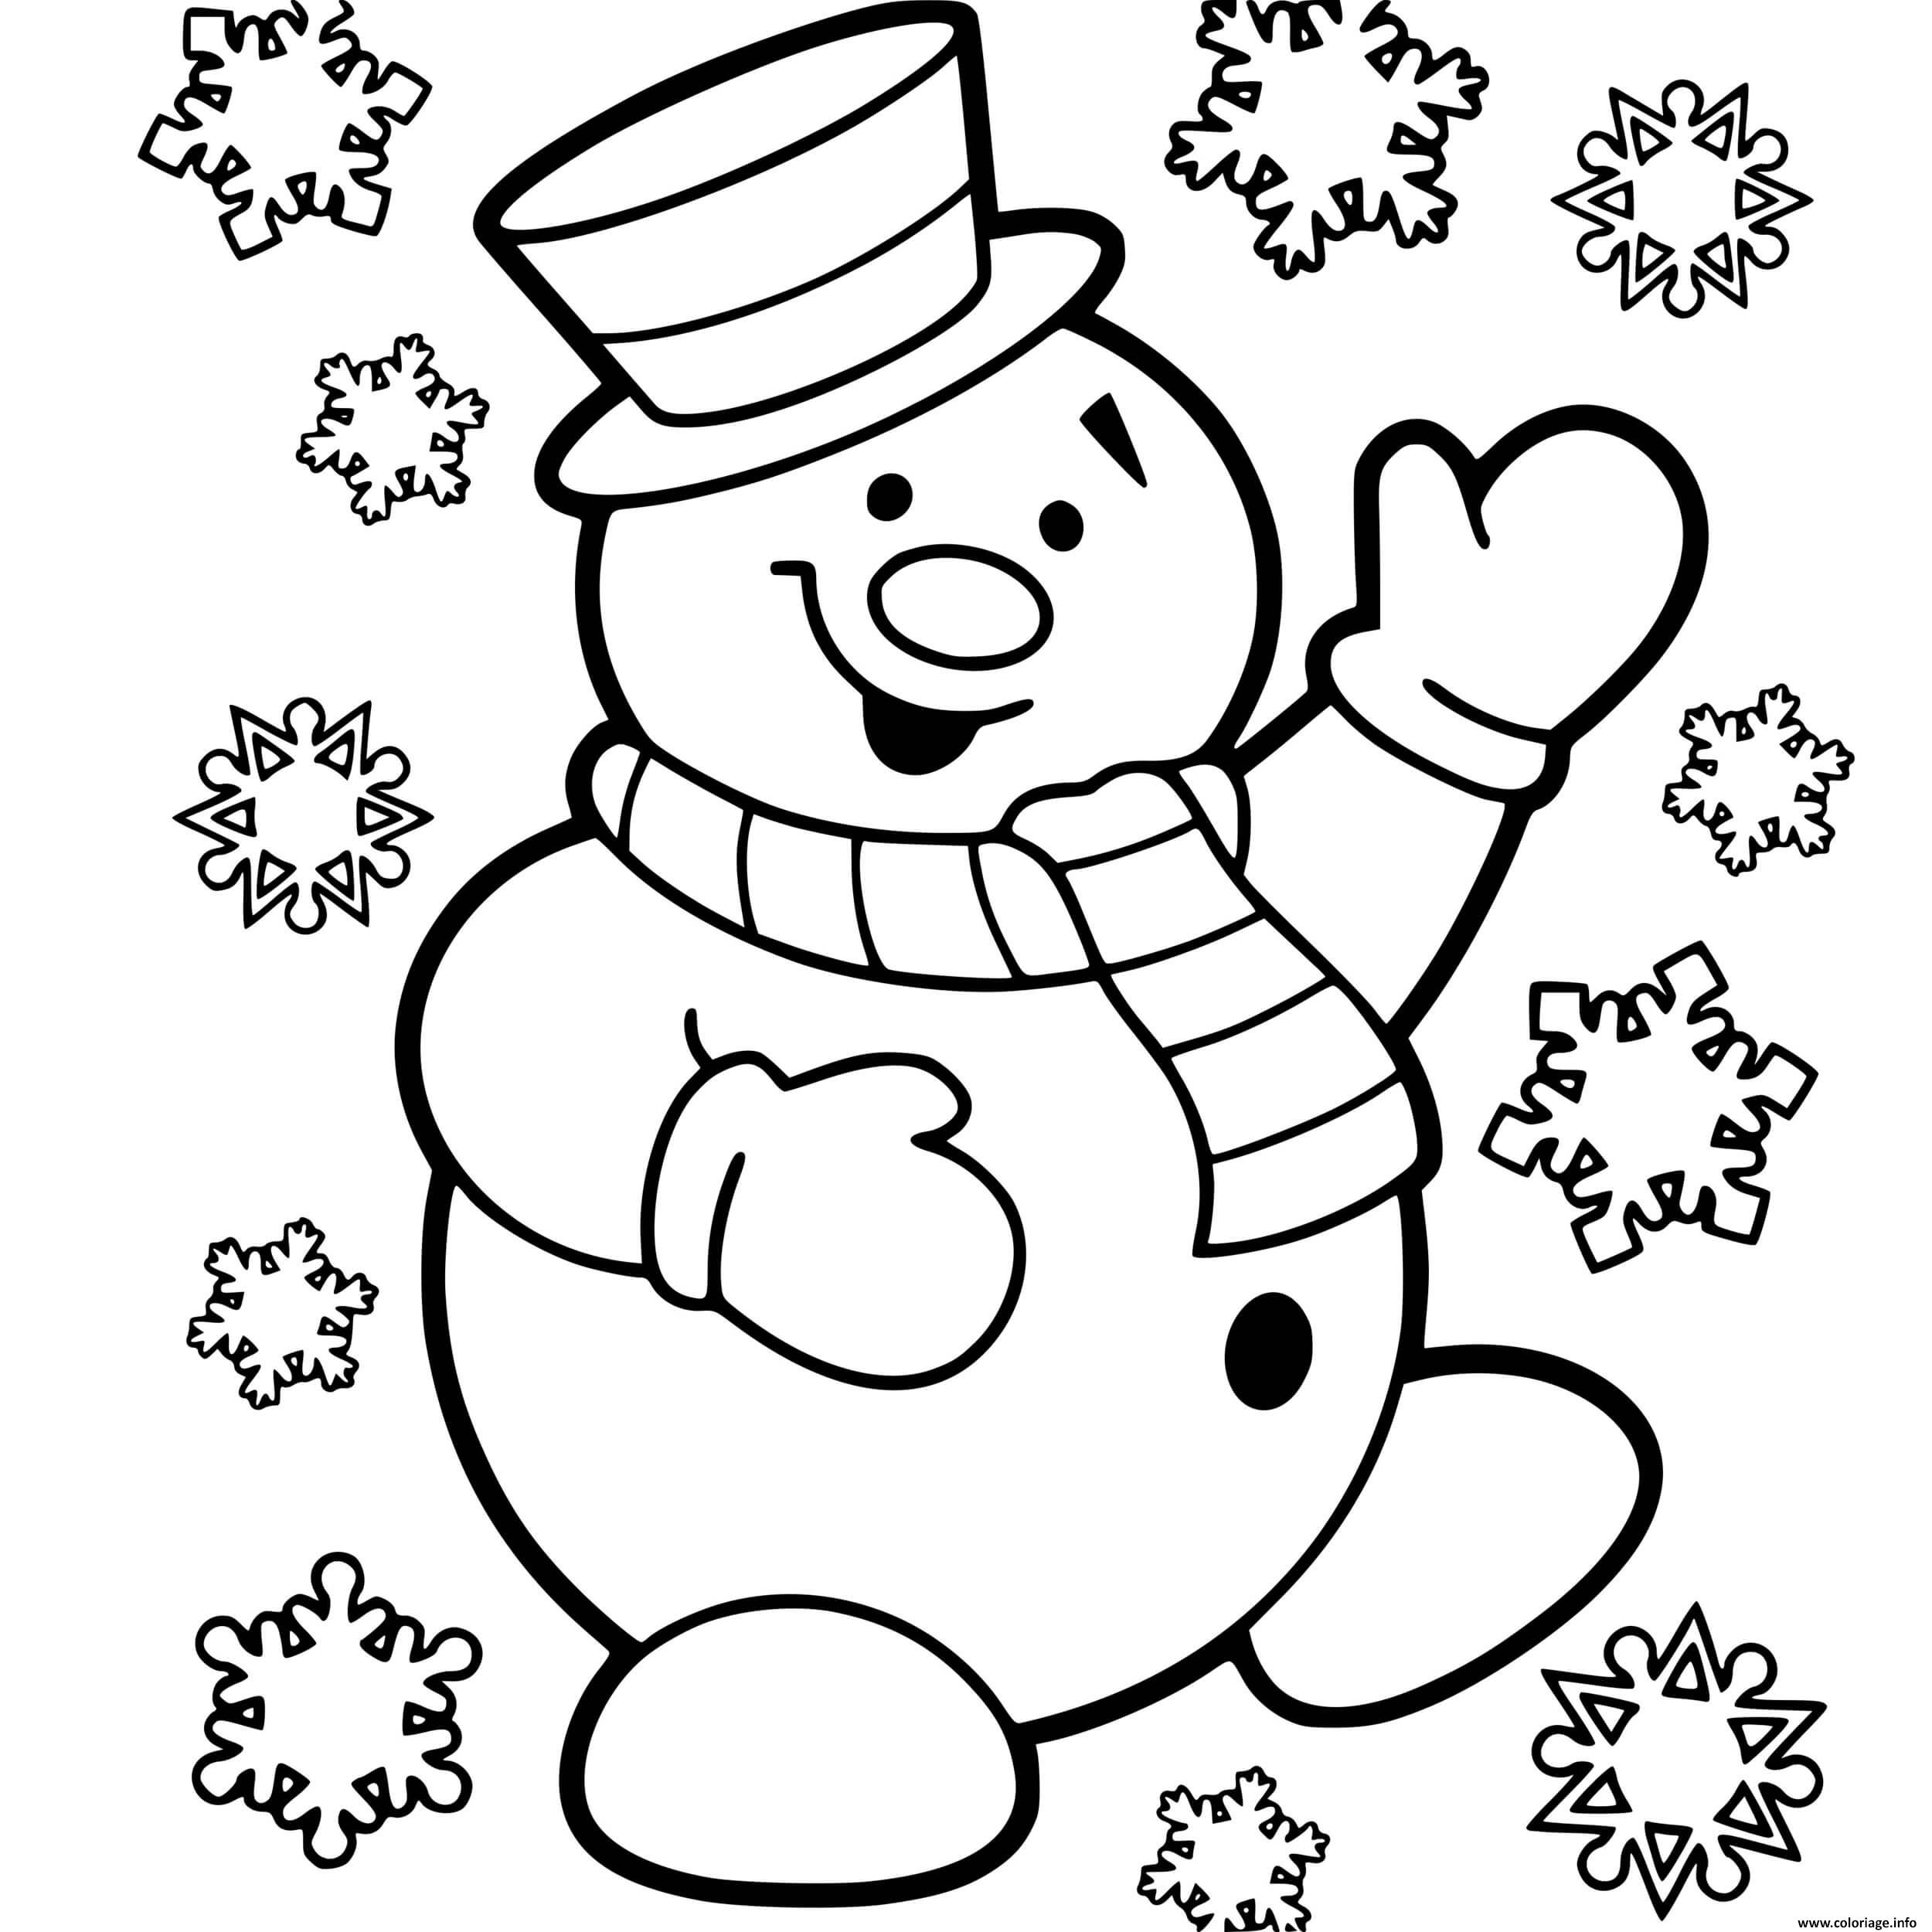 Dessin bonhomme de neige maternelle avec flocons de neige Coloriage Gratuit à Imprimer